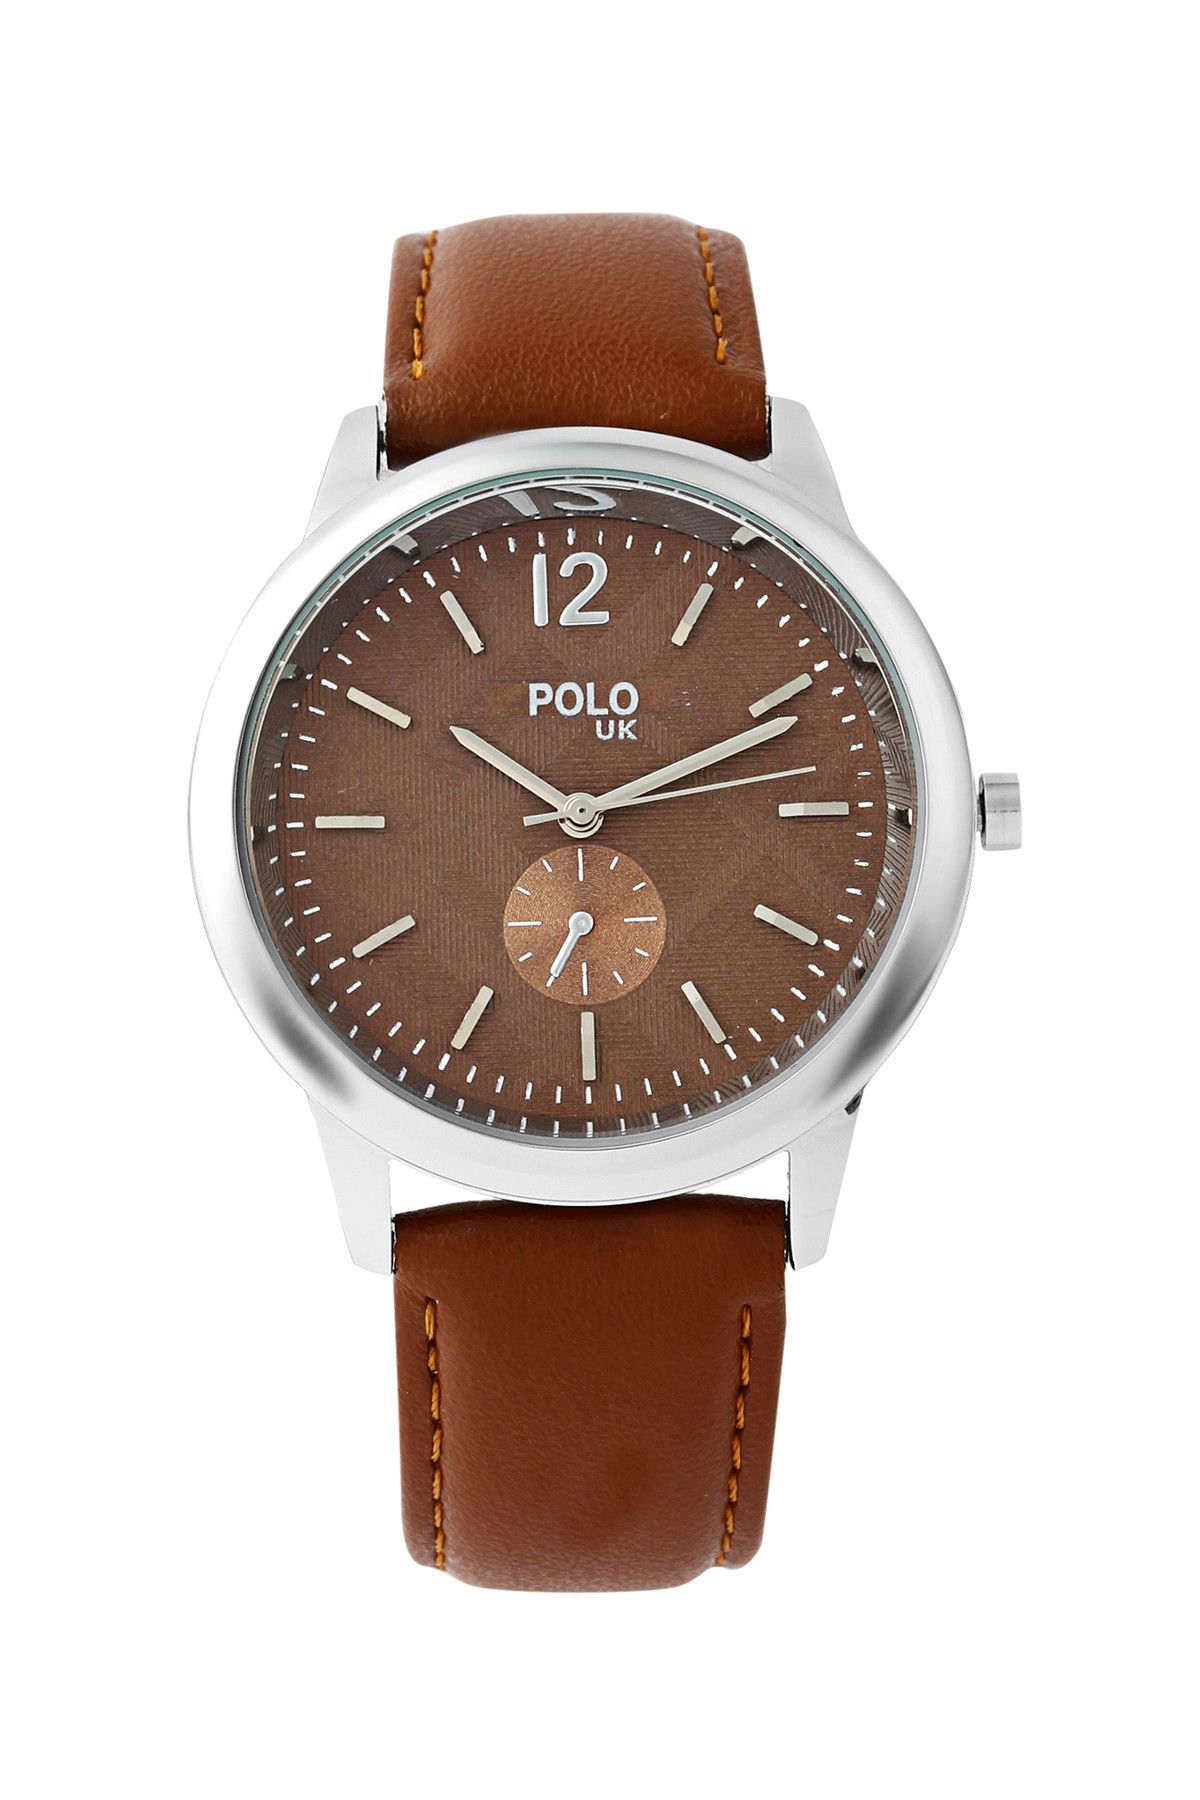 Polo U.K. Kadın Kol Saati POLOUK 1408